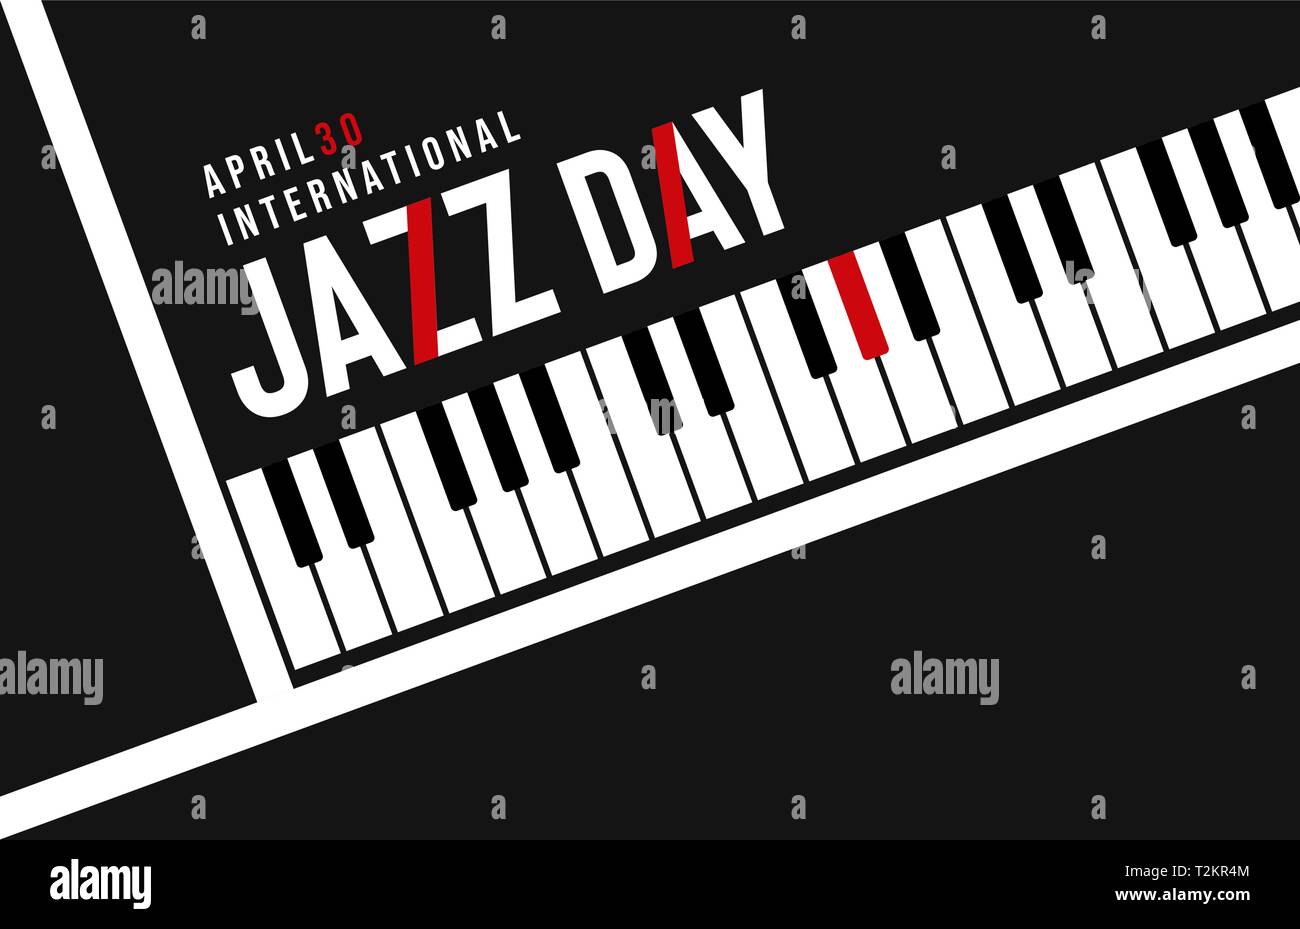 April 30 Jazz Tag Abbildung: Moderne schwarze Taste Hintergrund mit roten Typografie Angebot für Konzert oder Festival Veranstaltung. Stock Vektor